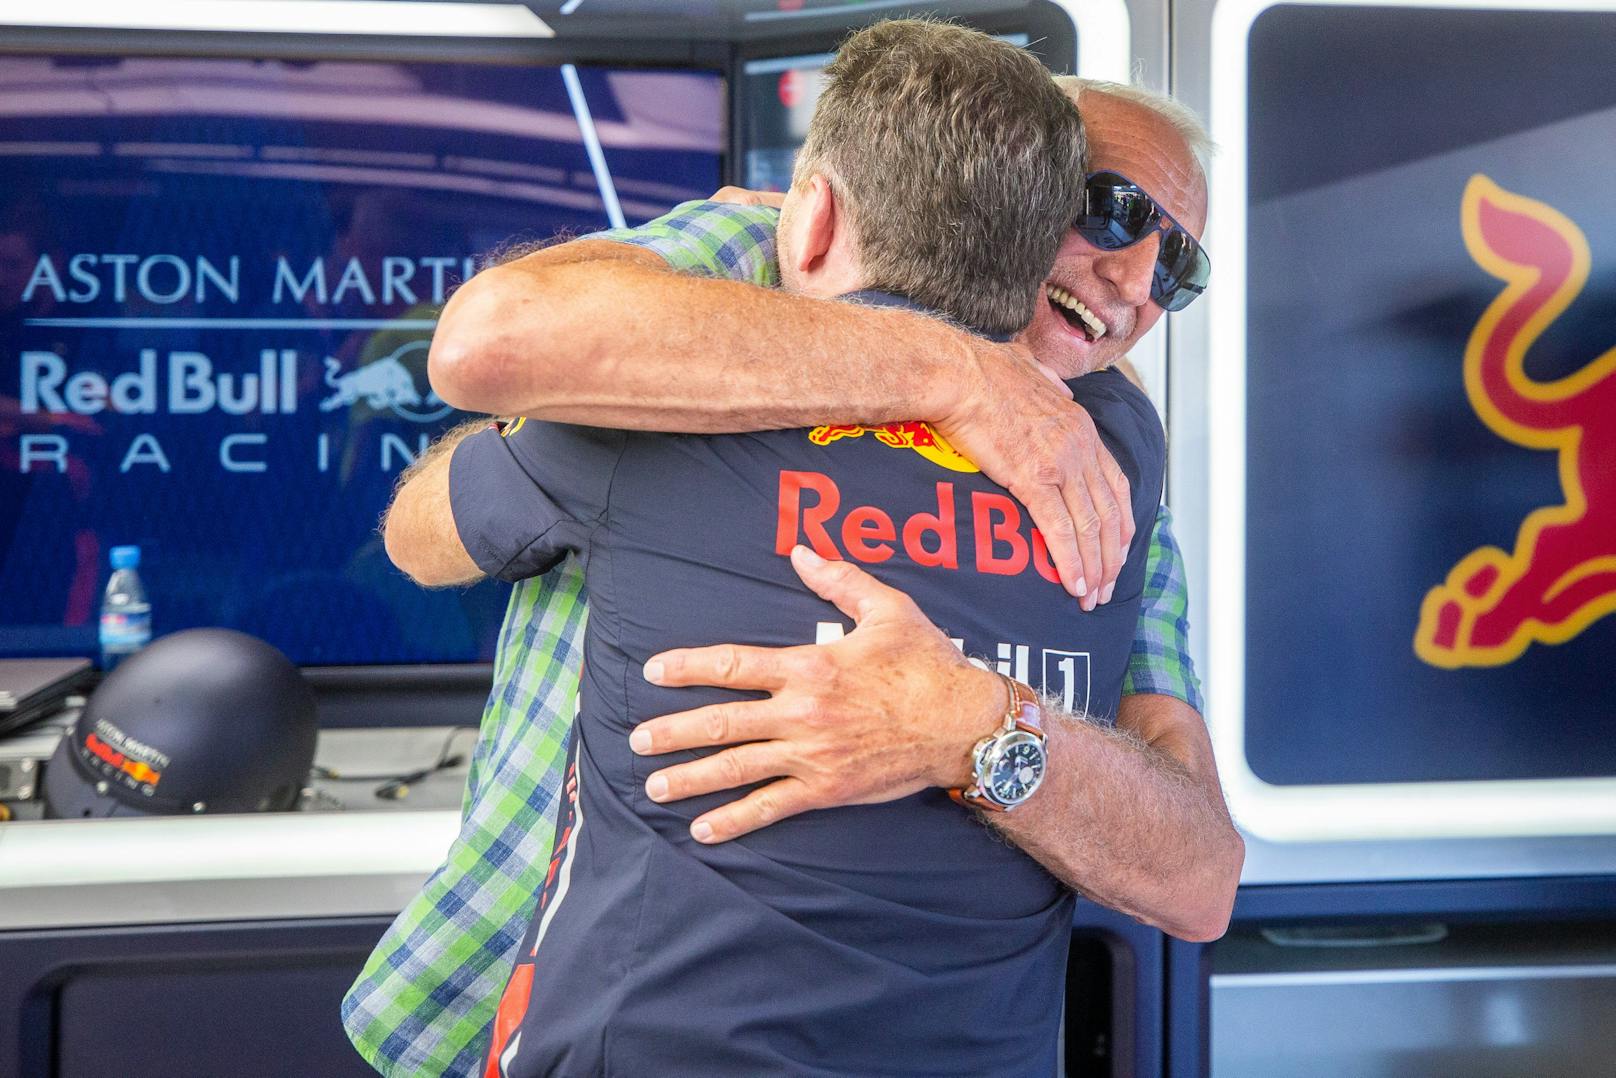 "Wir begleiten ein Talent auf seinem gesamten Werdegang, im Idealfall vom Gokart bis in die Formel 1. Wir haben allein in Amerika 4.500 Fahrer selektiert, drei davon kamen nach Europa und gewinnen bereits. Dieser Weg ist für die Fahrer, den Sport und natürlich auch für das Marketing von Red Bull richtig." – hier umarmt Mateschitz Red-Bull-Racings Teamchef Christian Horner.